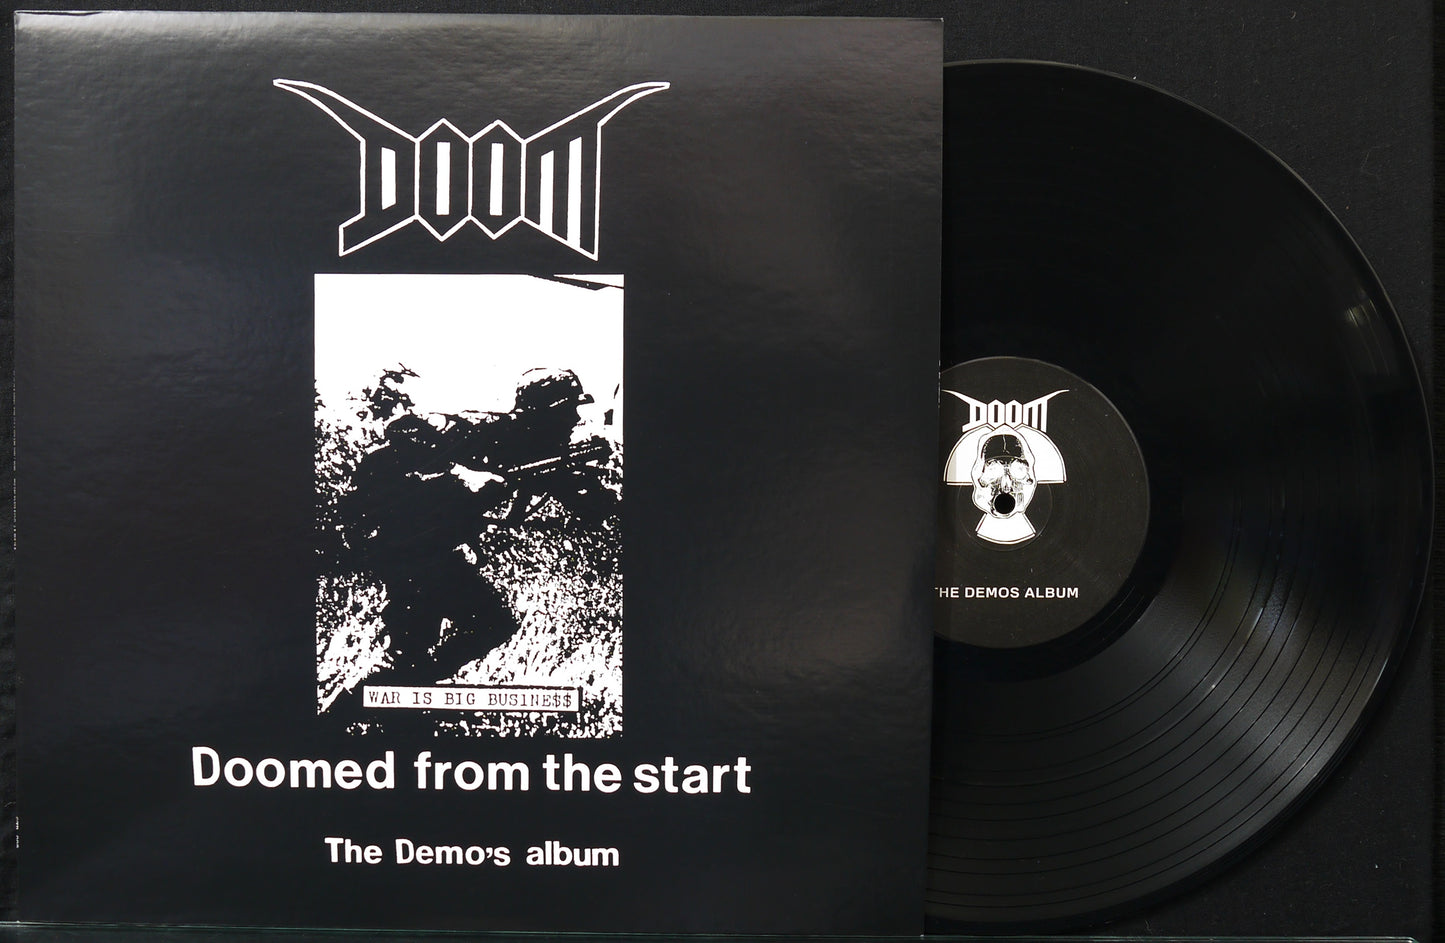 DOOM - Doomed From The Start (The Demo's Album) 12"